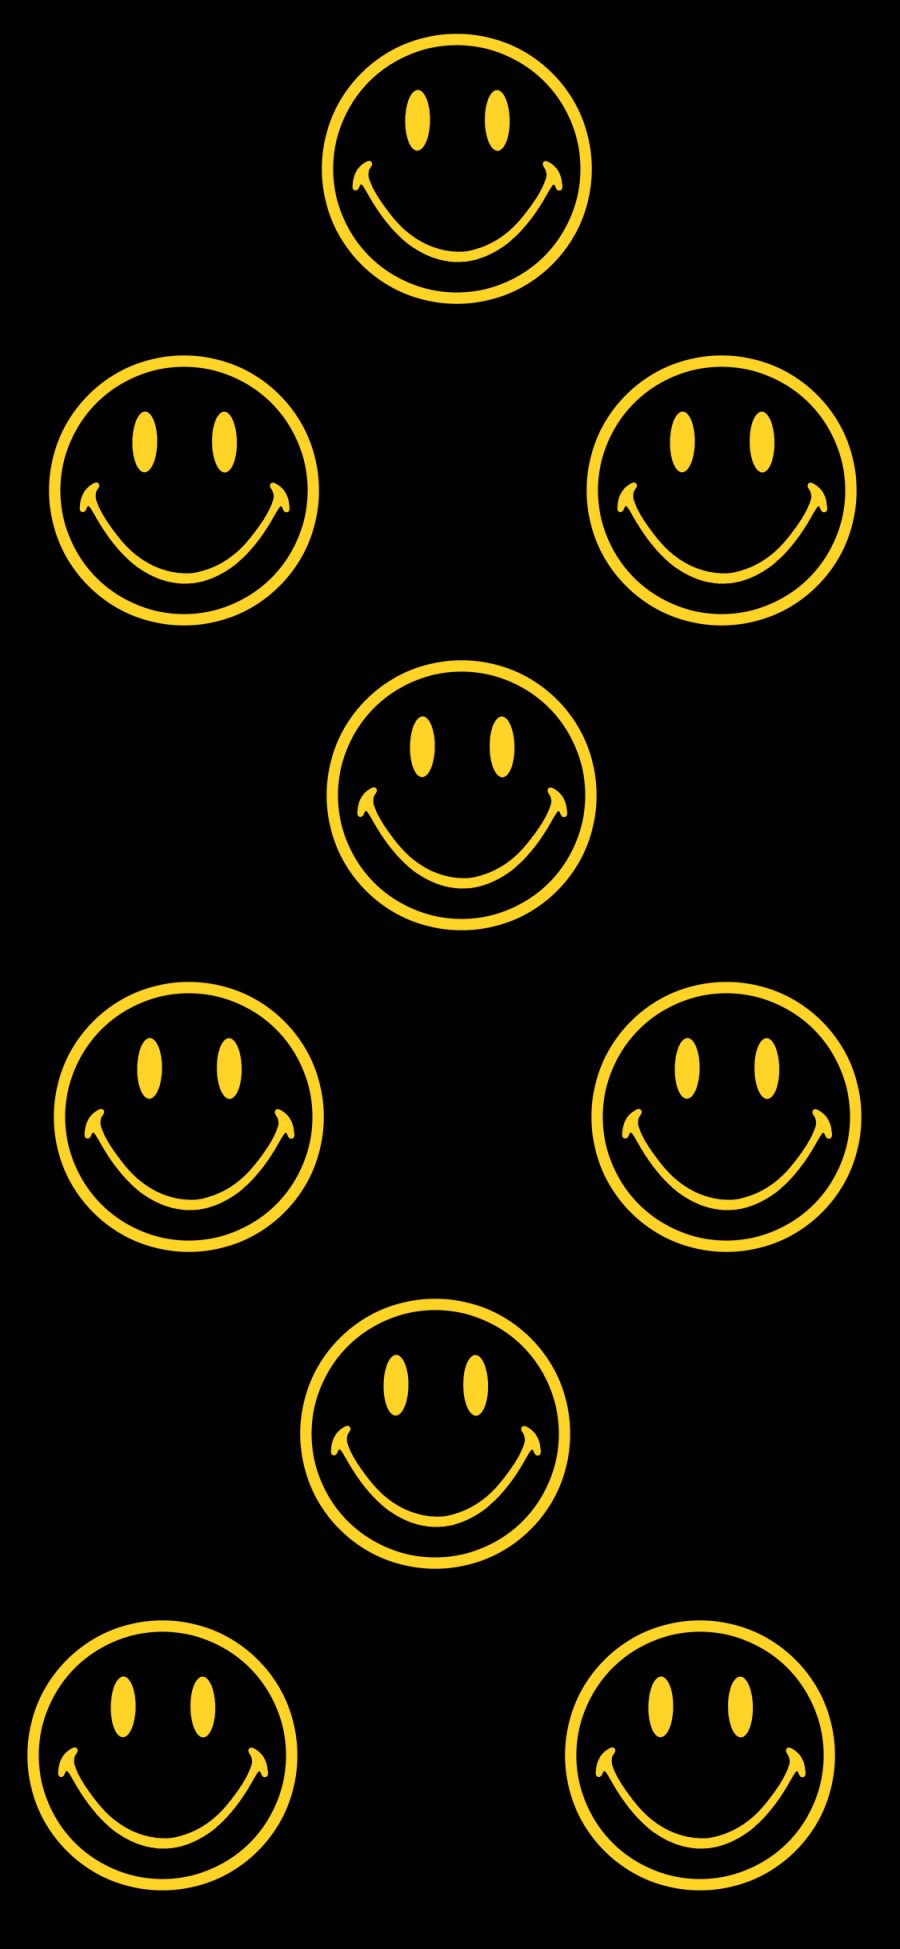 [2436×1125]笑脸 CHINATOWN MARKET 黑色 表情 品牌 平铺 苹果手机动漫壁纸图片